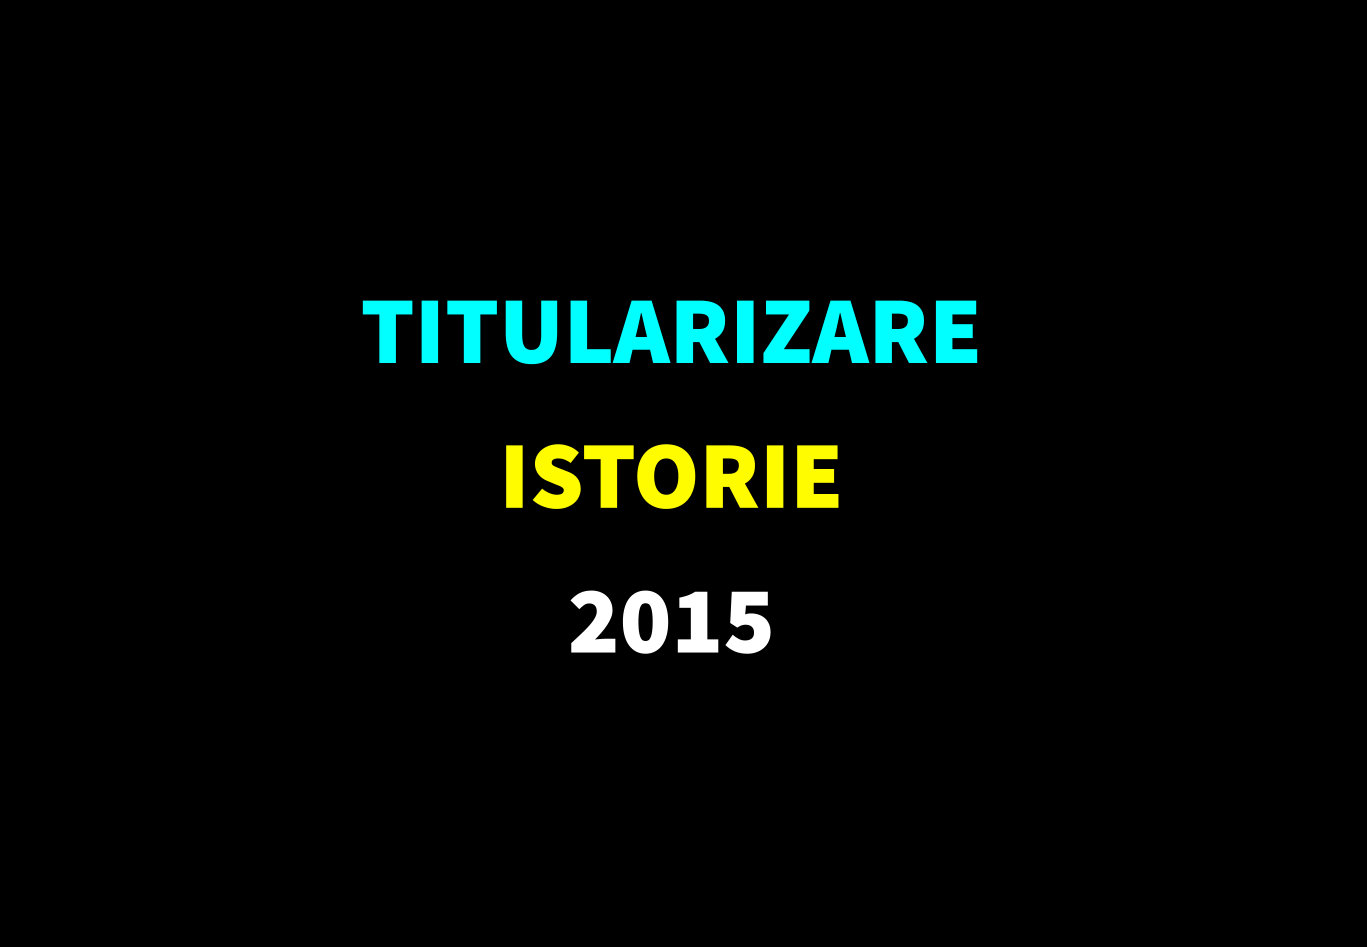 Titularizare istorie 2015